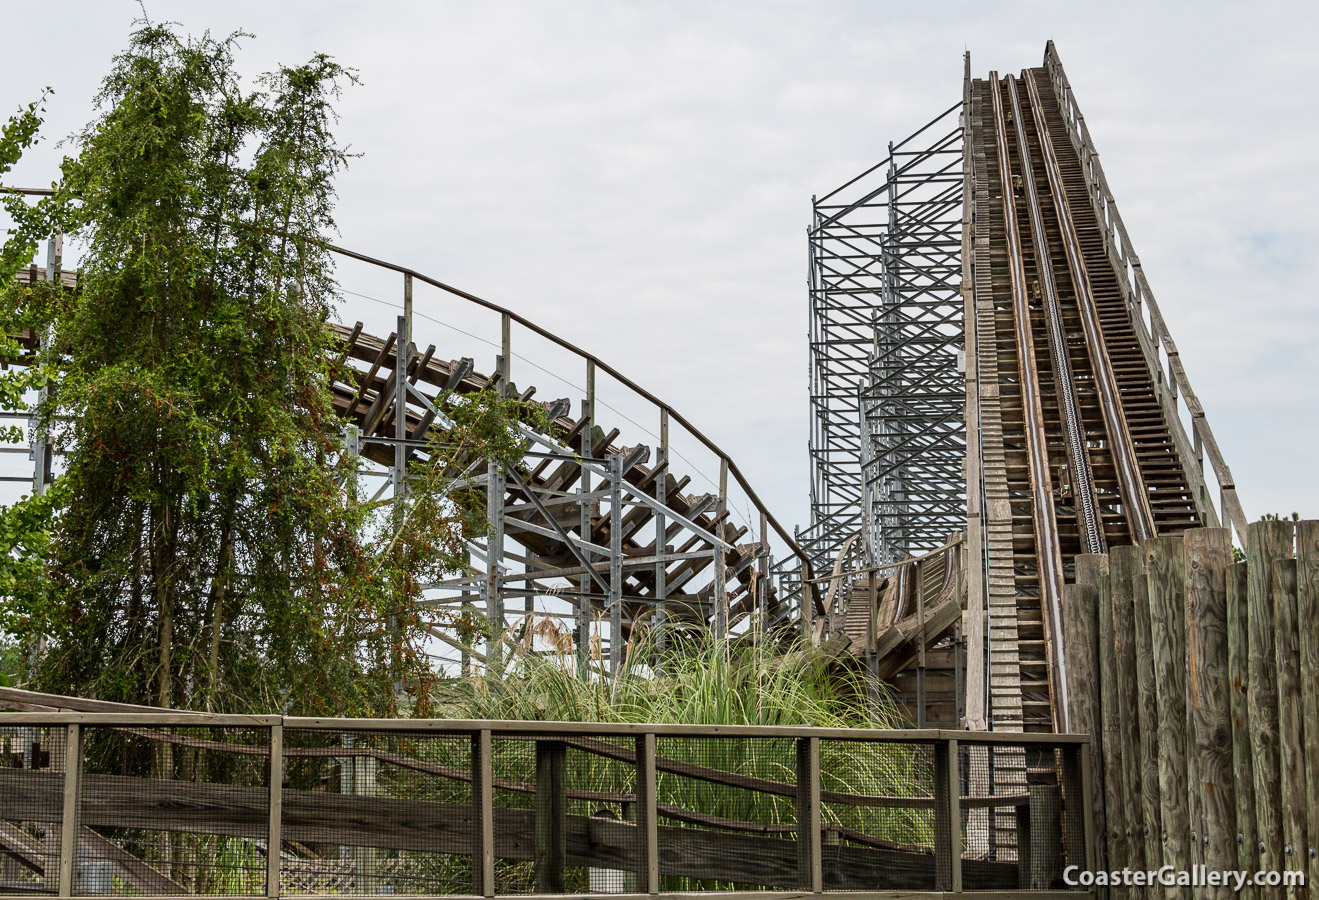 Cheetah wooden roller coaster